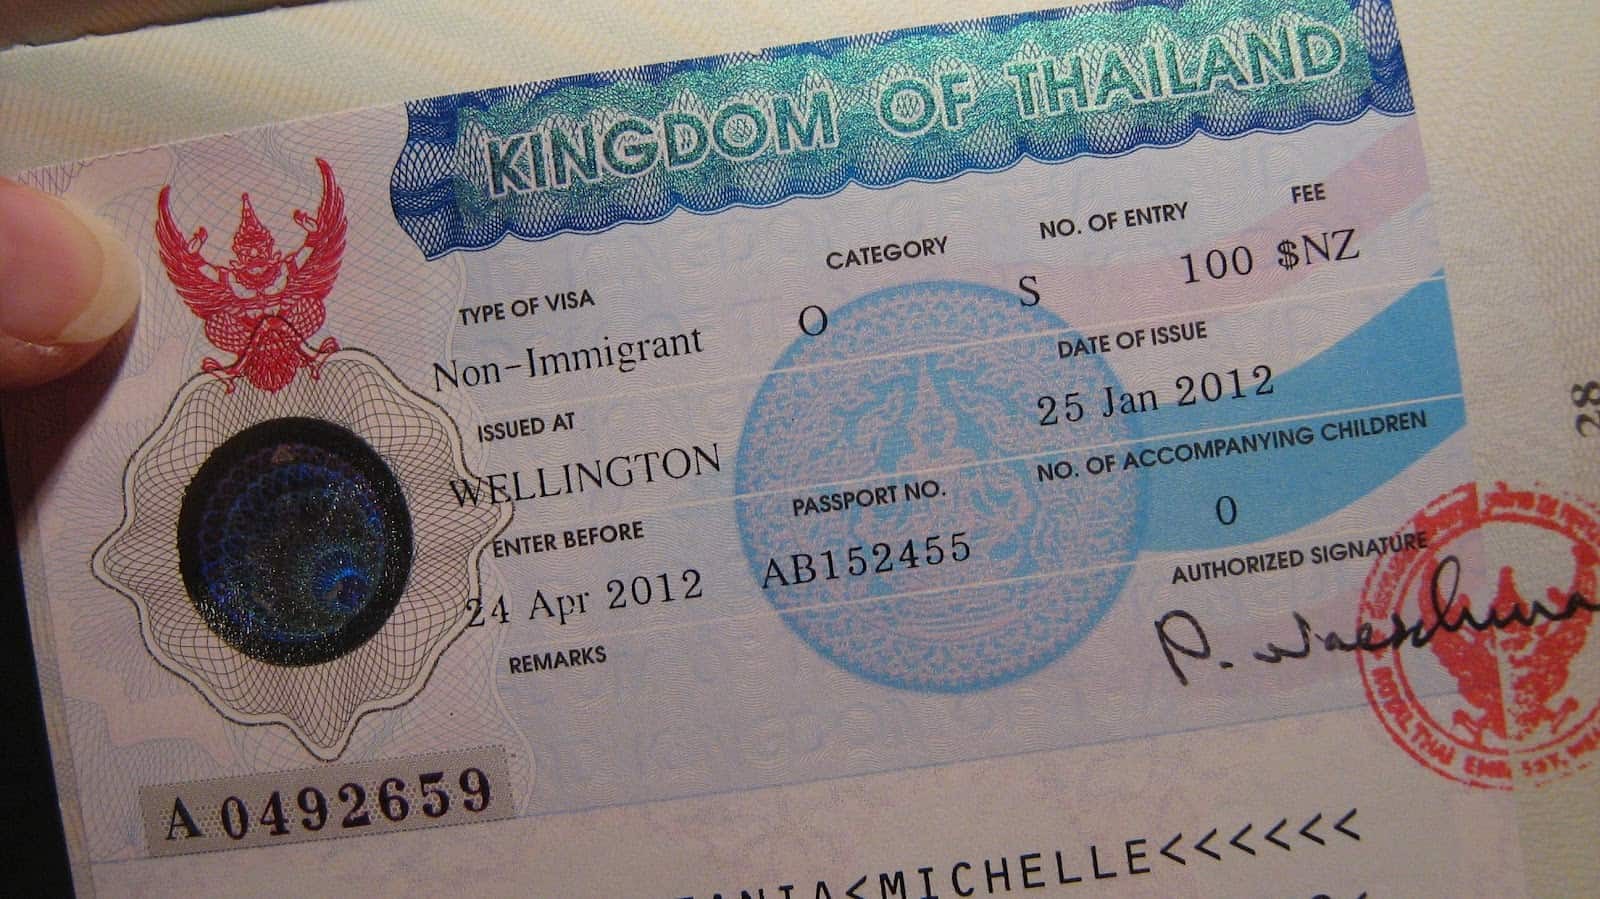 Đi du lịch Thái Lan trong thời gian ngắn du khách không cần xin visa